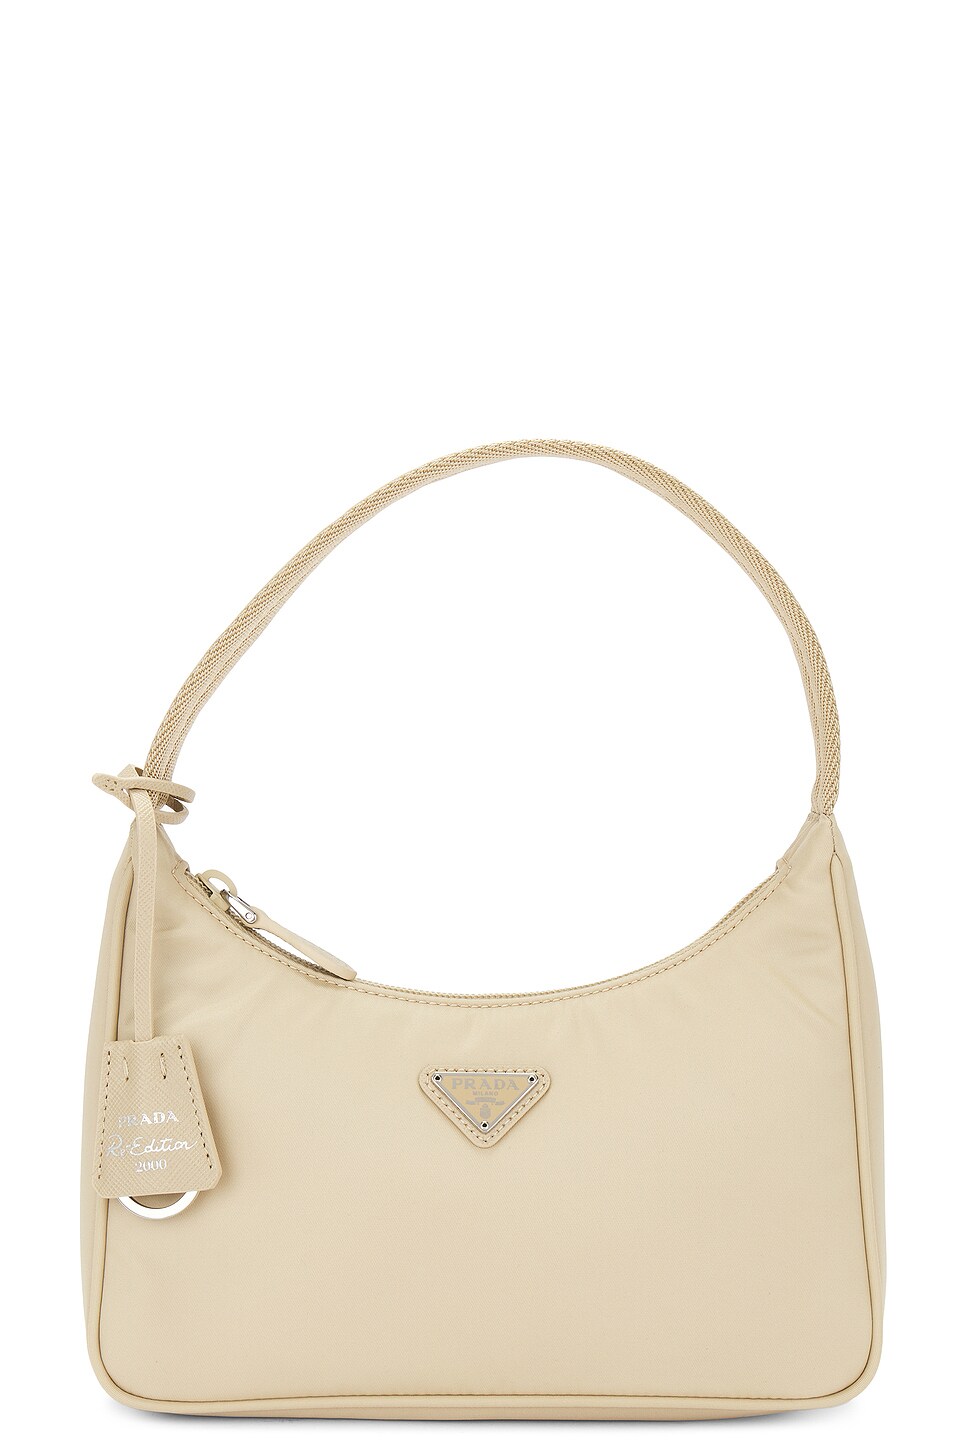 Prada Re-edition Nylon Shoulder Bag In Cream